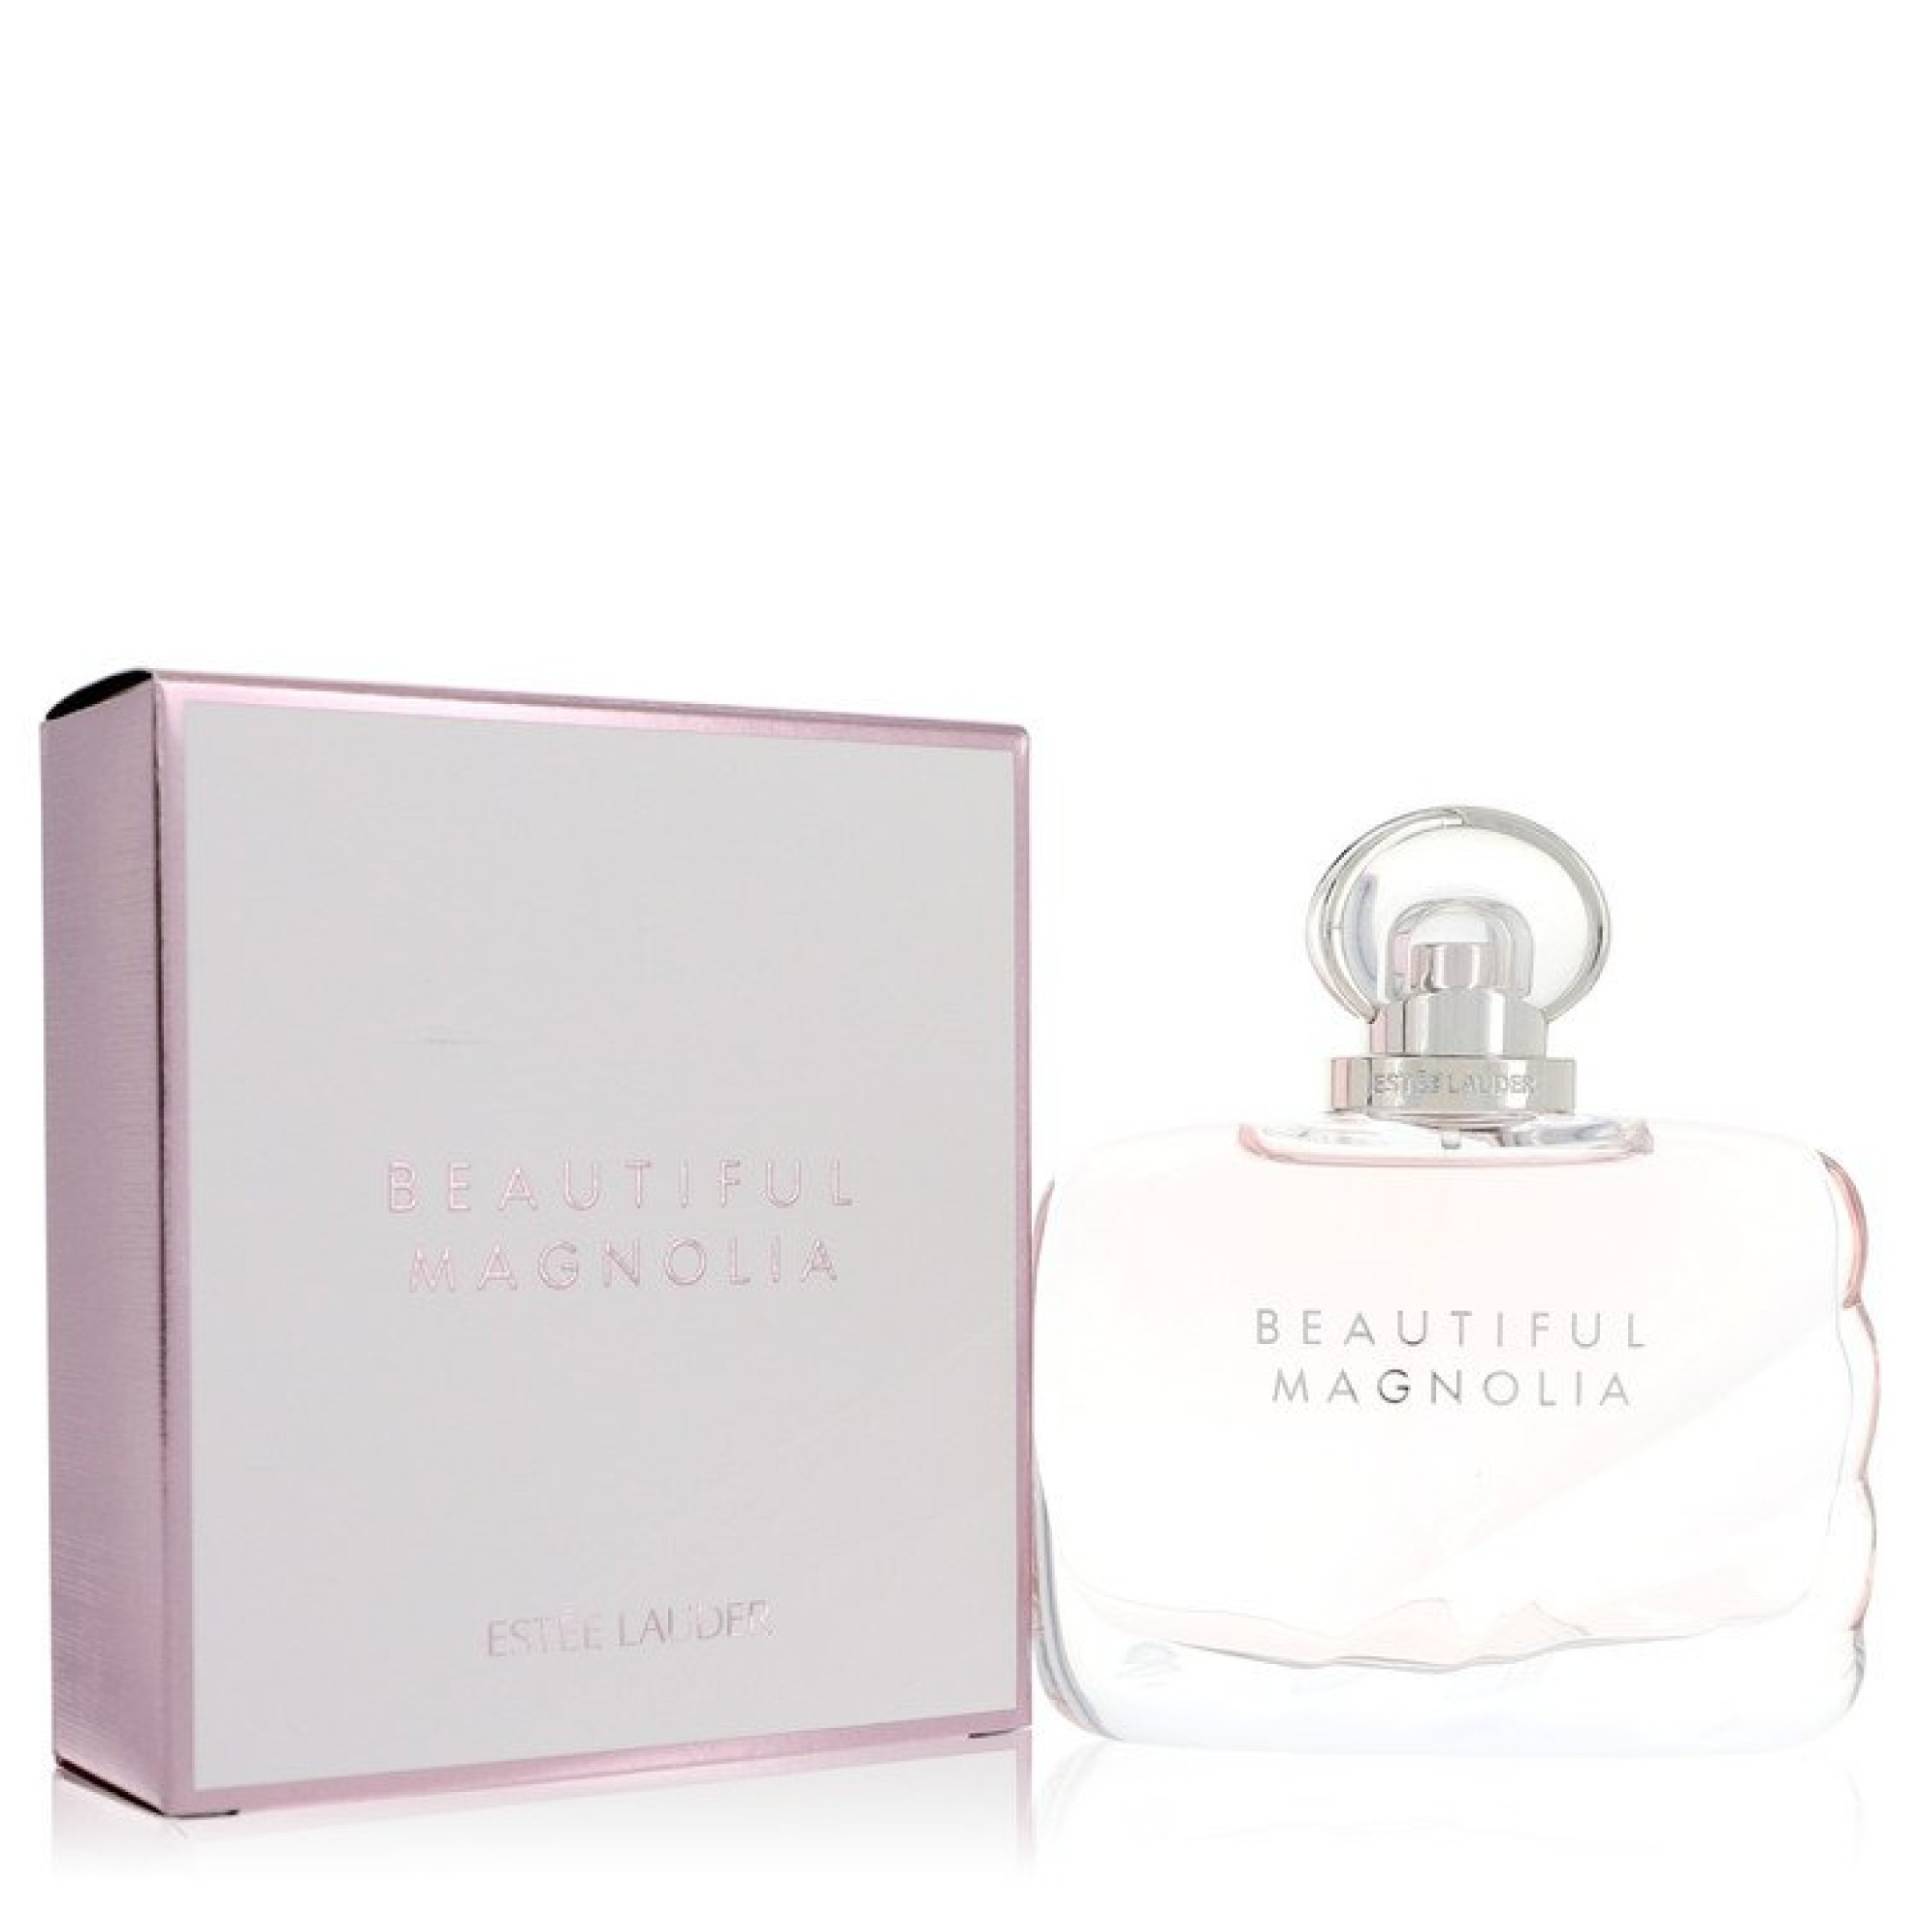 Estee Lauder Beautiful Magnolia Eau De Parfum Spray 101 ml von Estee Lauder